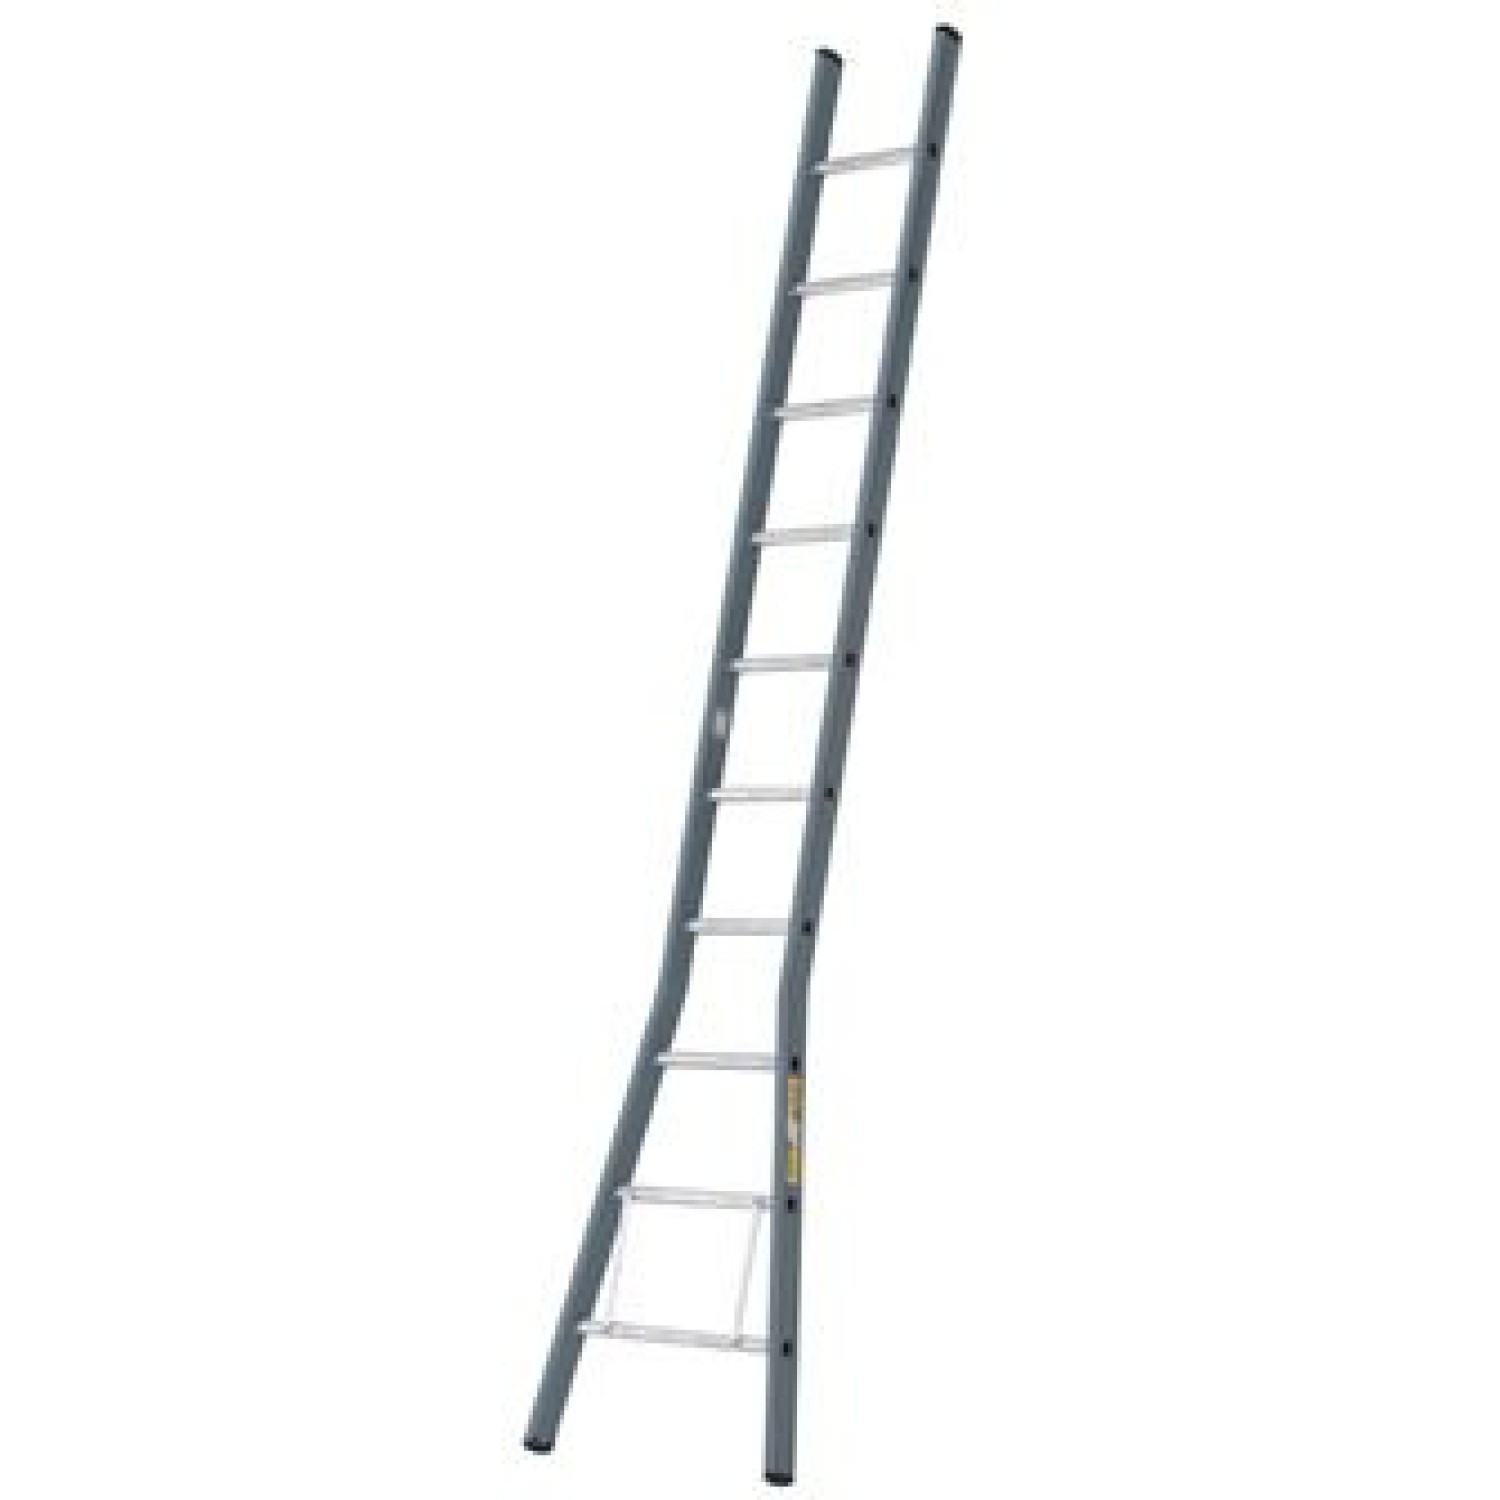 Dirks Uitgebogen ladders assortiment